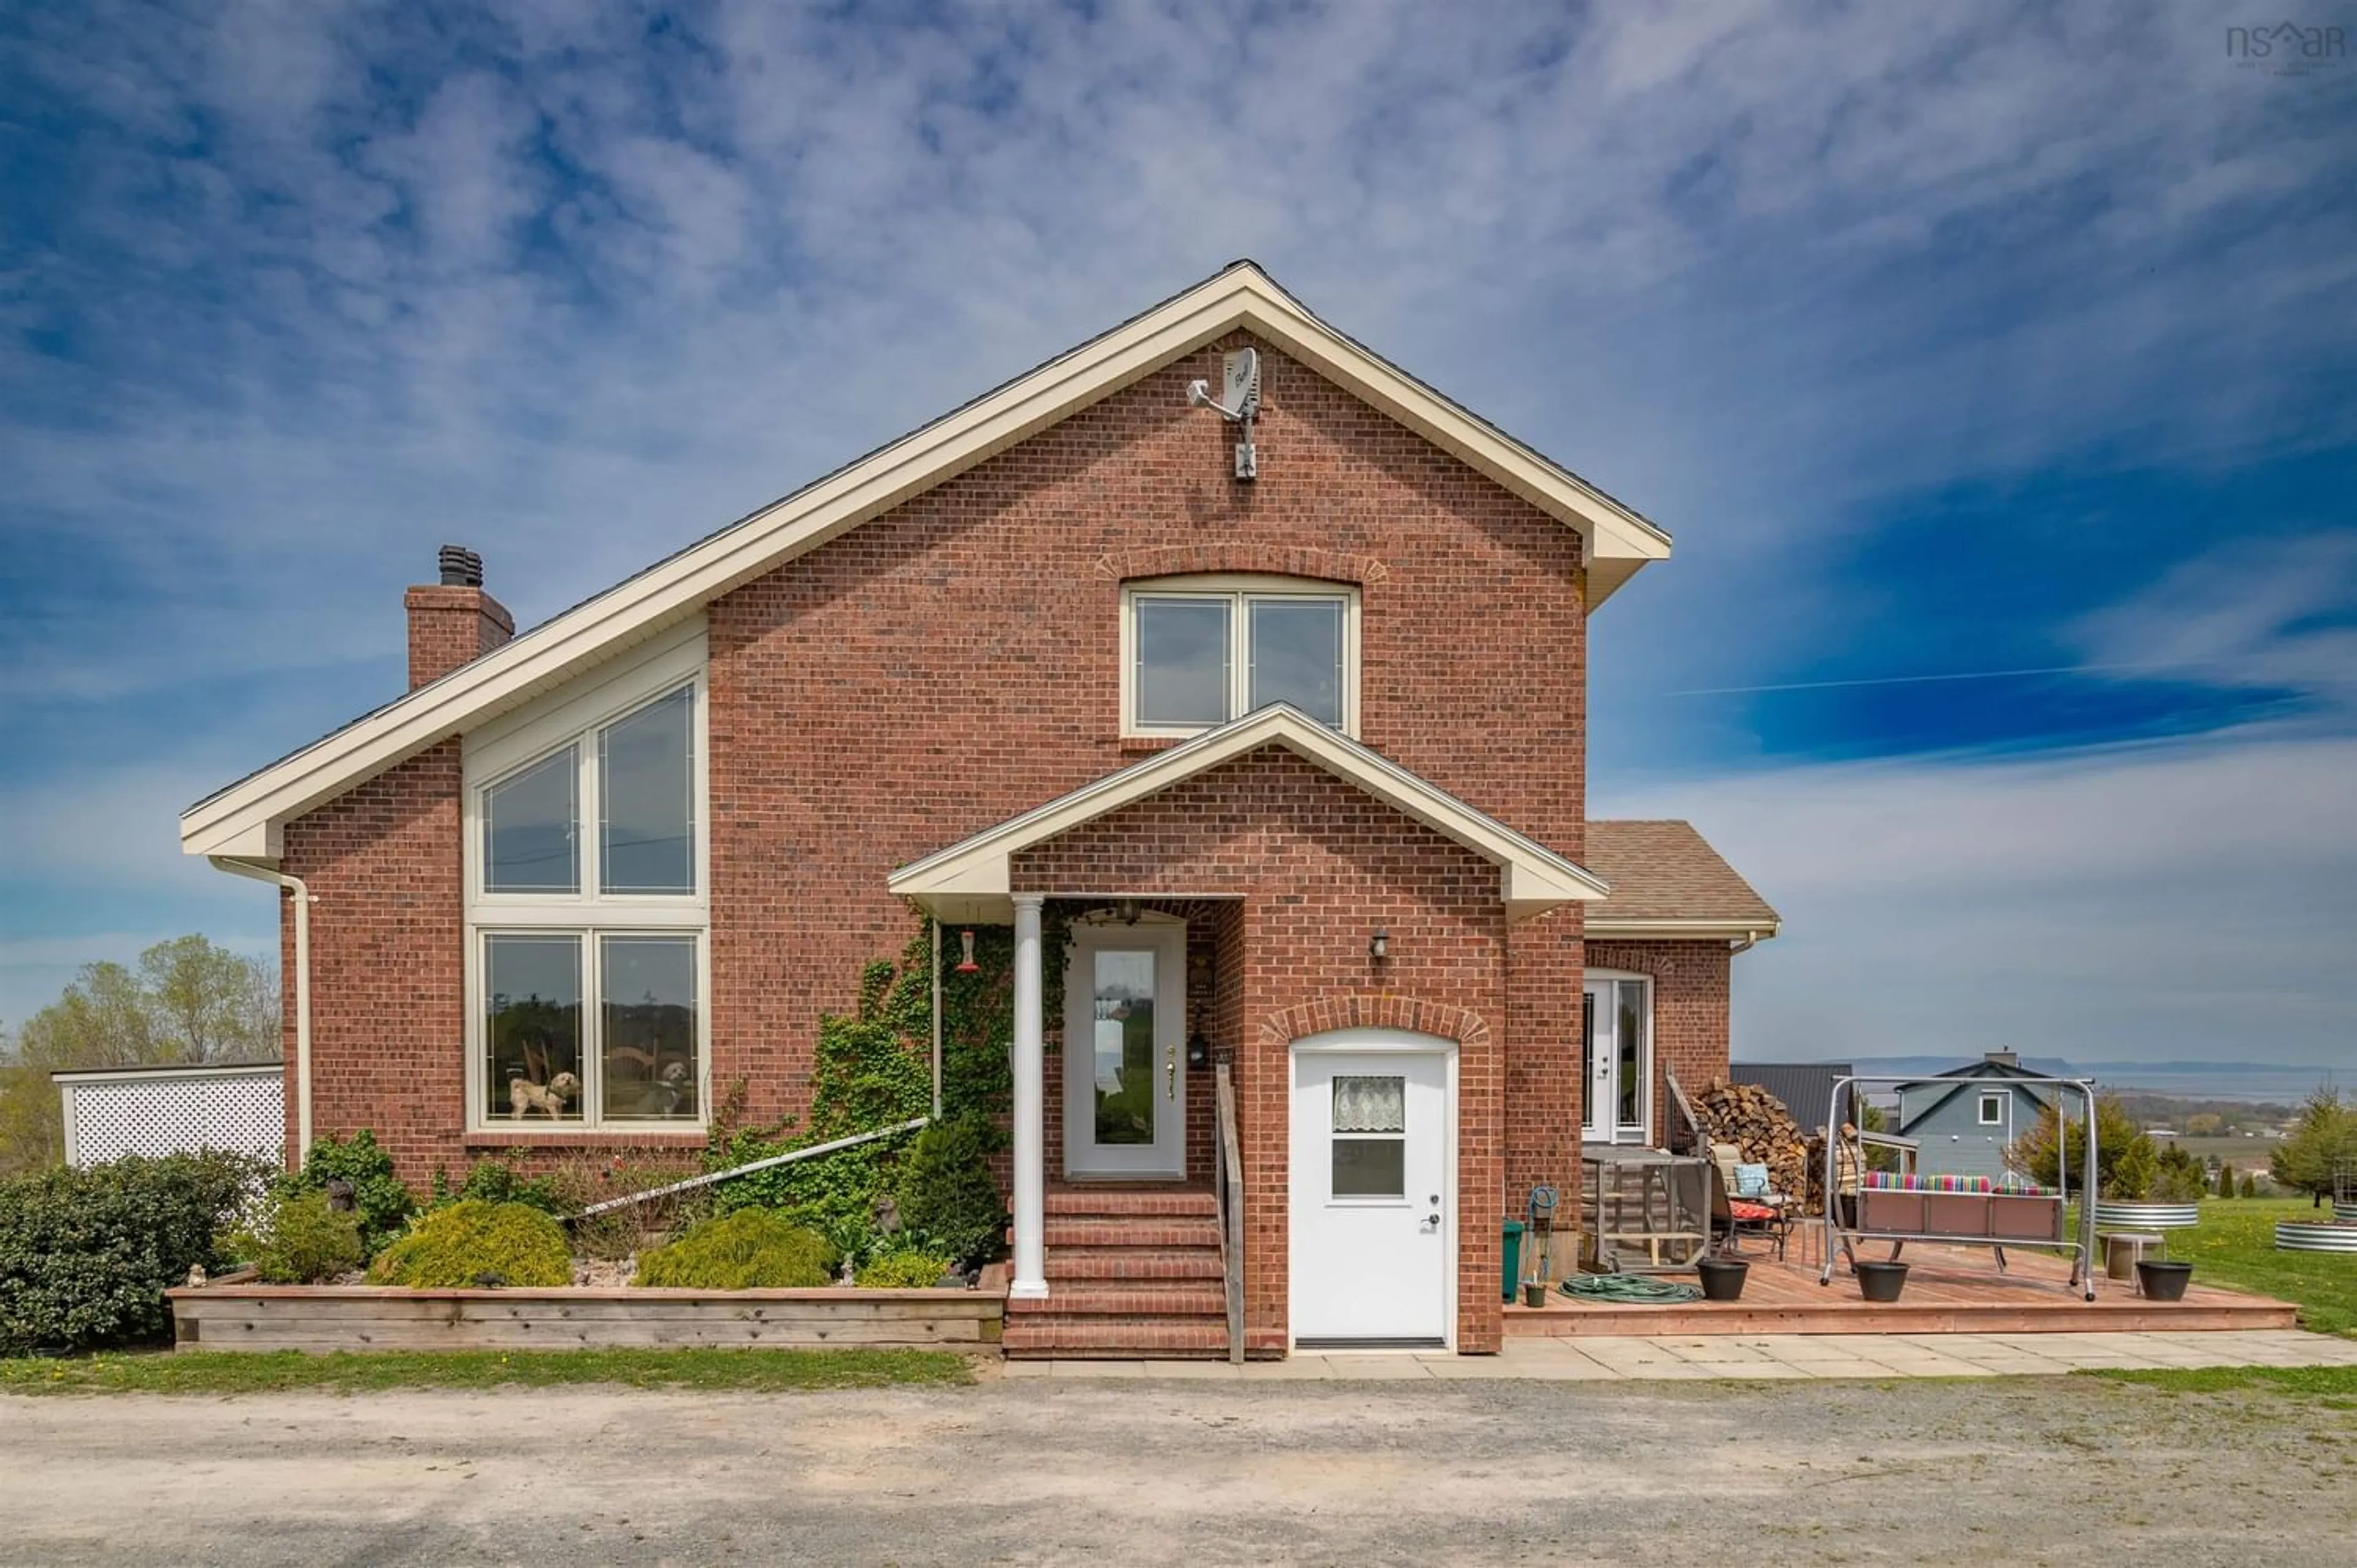 Home with brick exterior material for 12809 Highway 1, Avonport Nova Scotia B0P 1P0